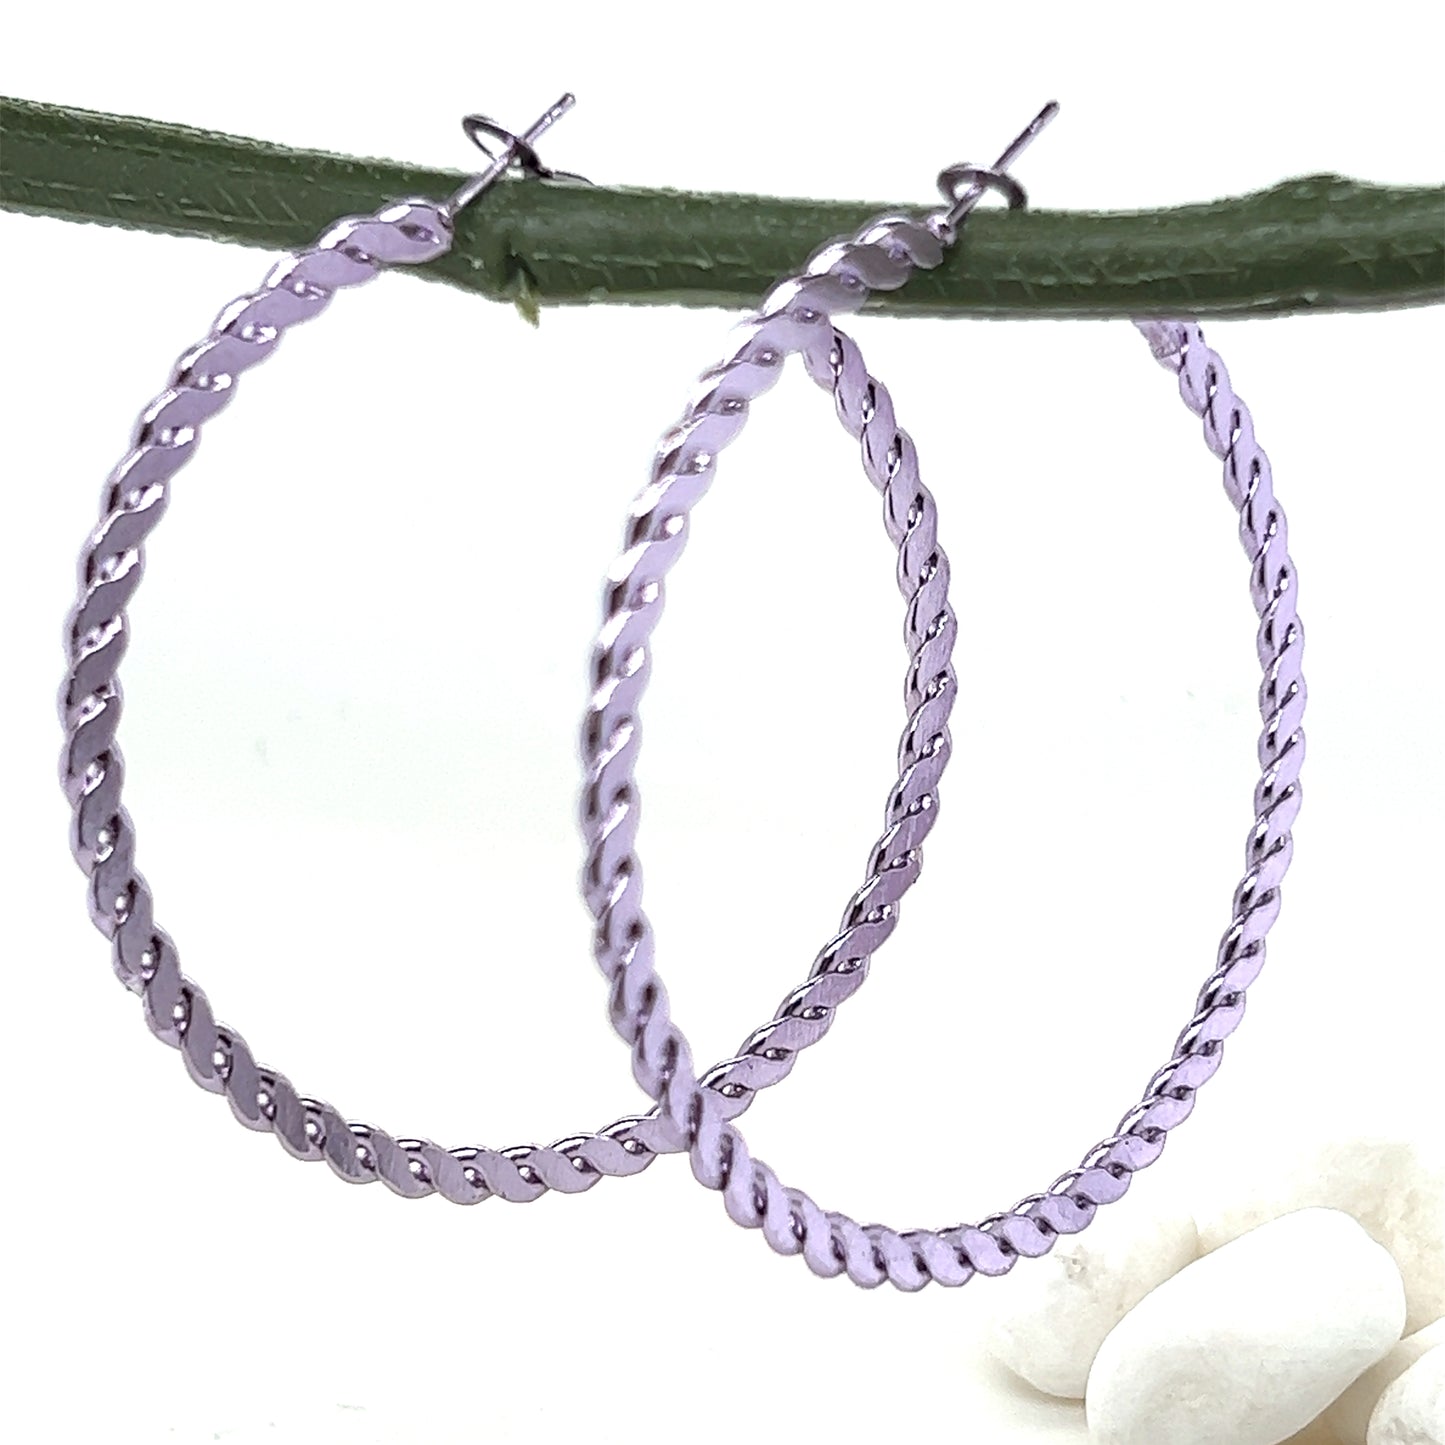 Fixed Chain Link Metallic Hoop Earrings - In 6 Colors